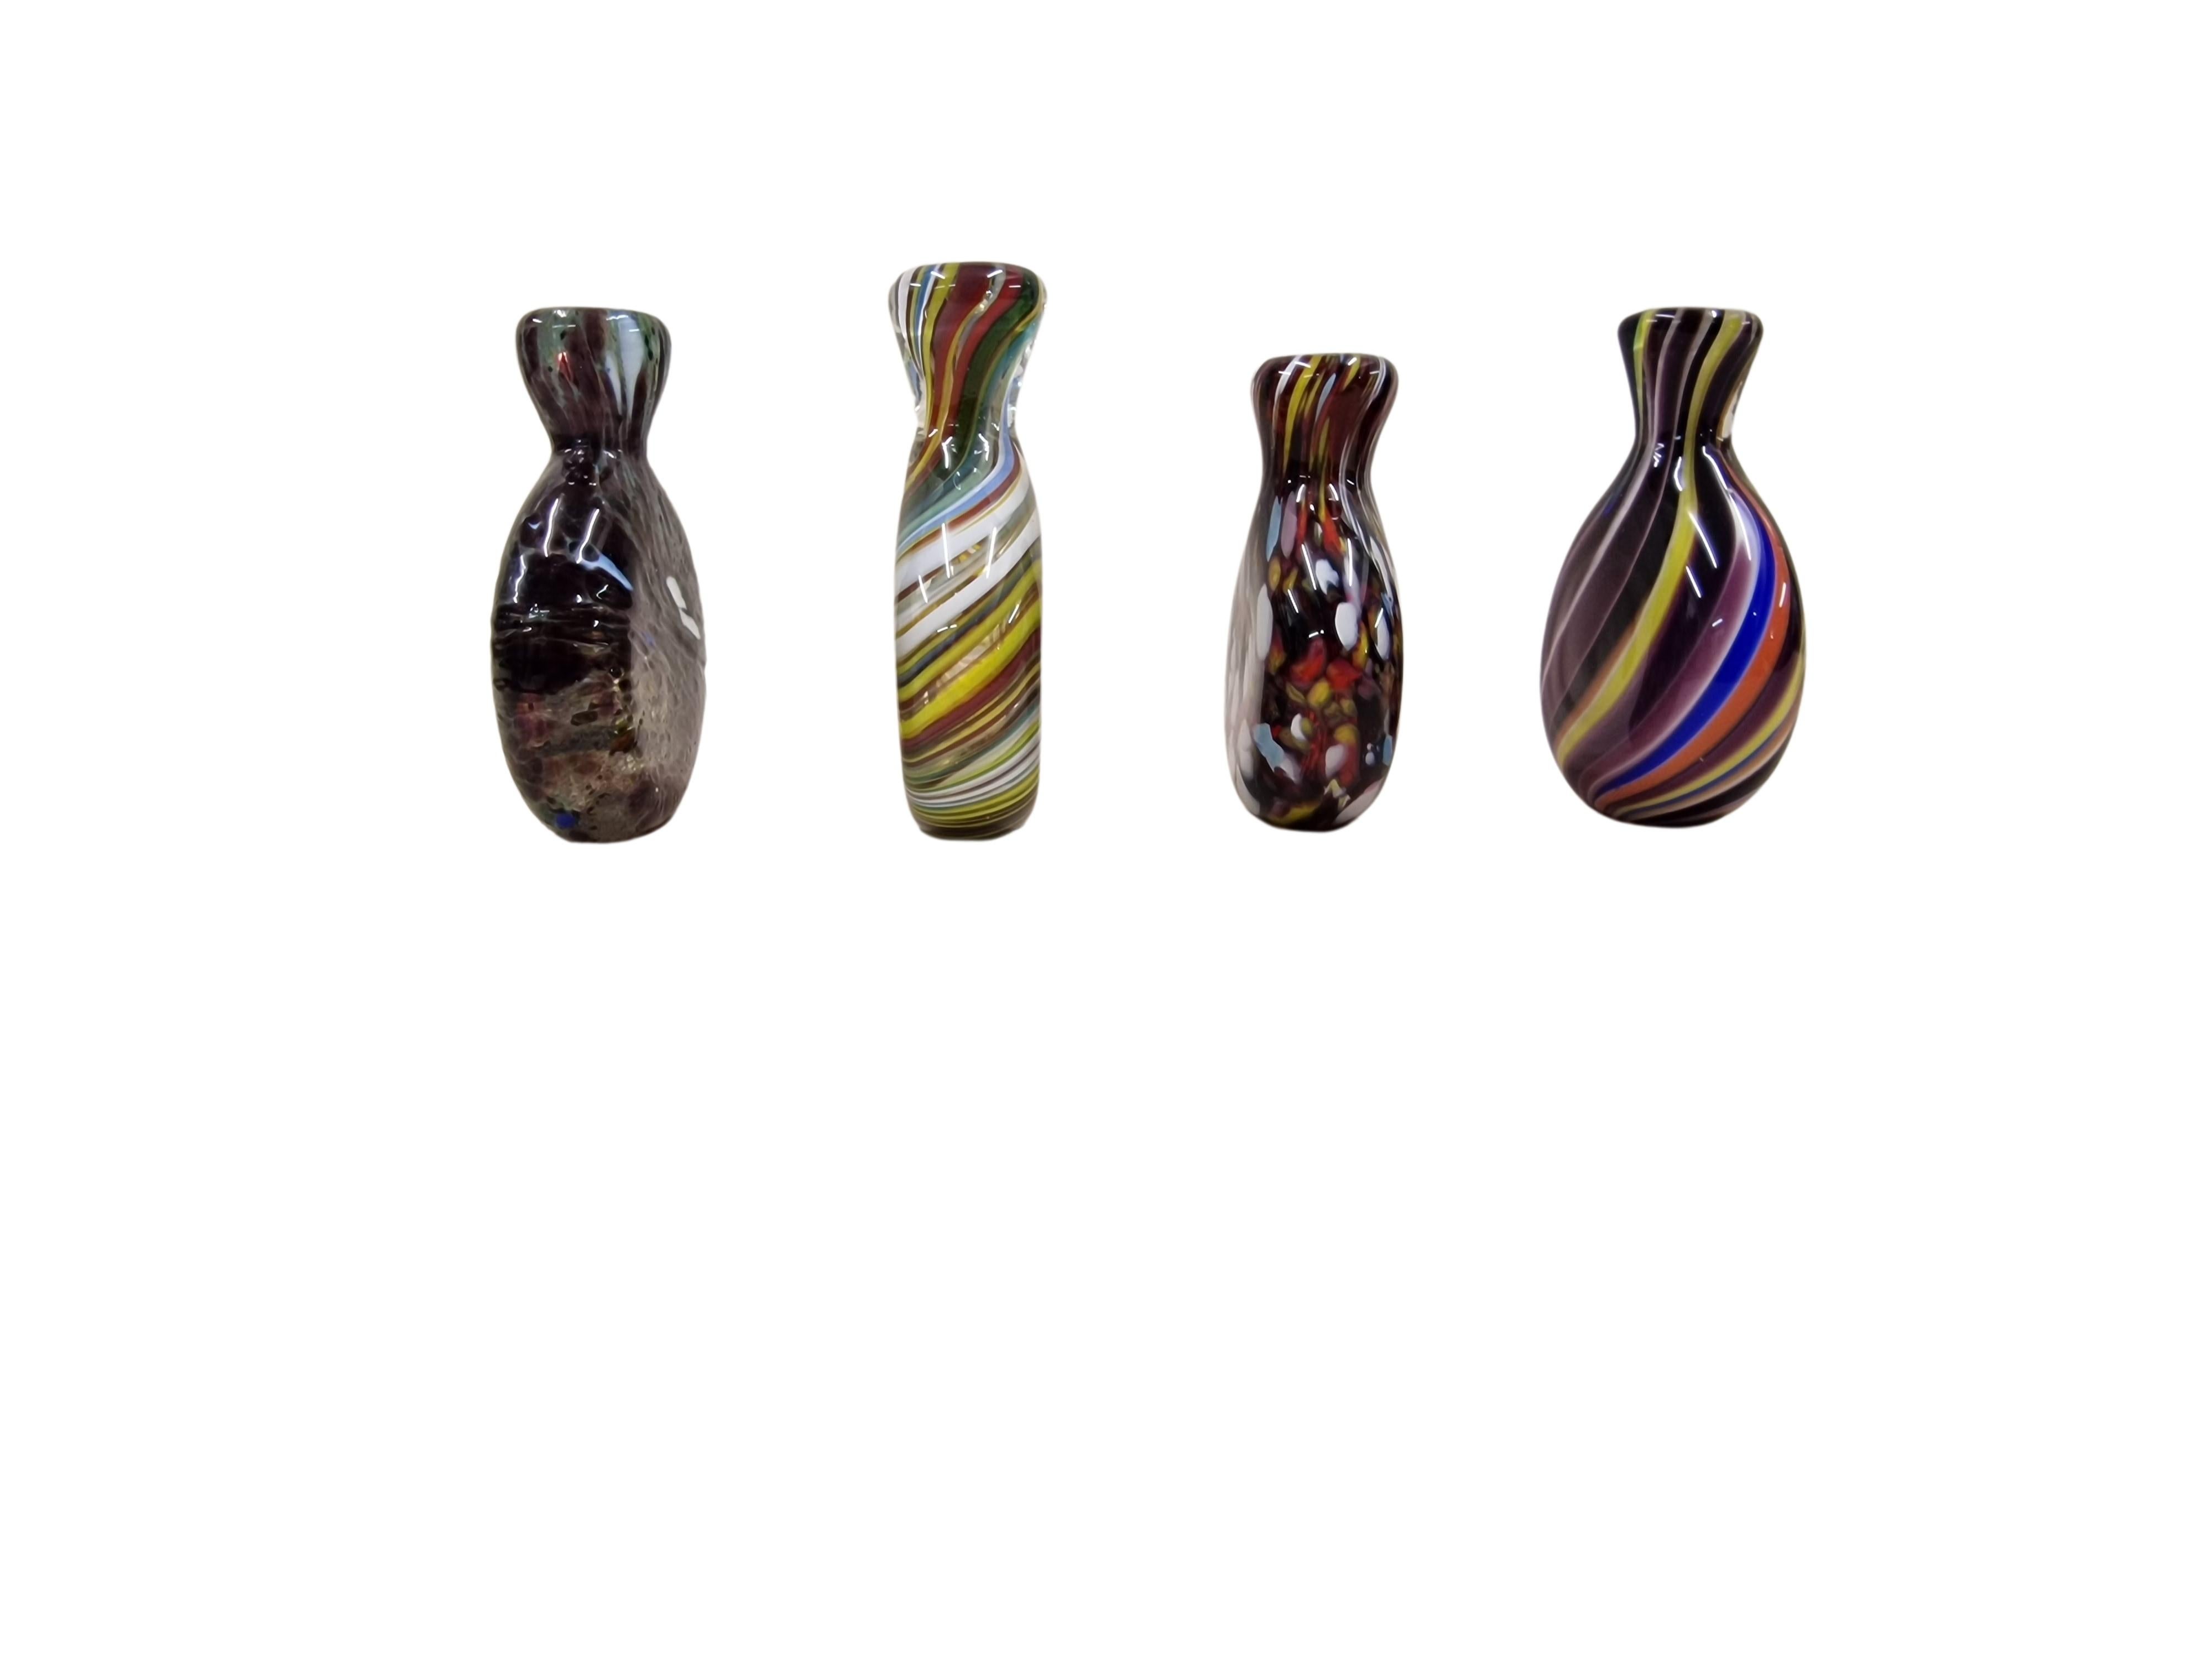 Satz von vier Schnupftabakflaschen aus Glas, sehr selten aus den 1960er/70er Jahren, hergestellt von einer der Glashütten - wahrscheinlich Joska Kristall, im Böhmerwald, Deutschland.

Es handelt sich um Sammlungsstücke, die in einer meisterhaften